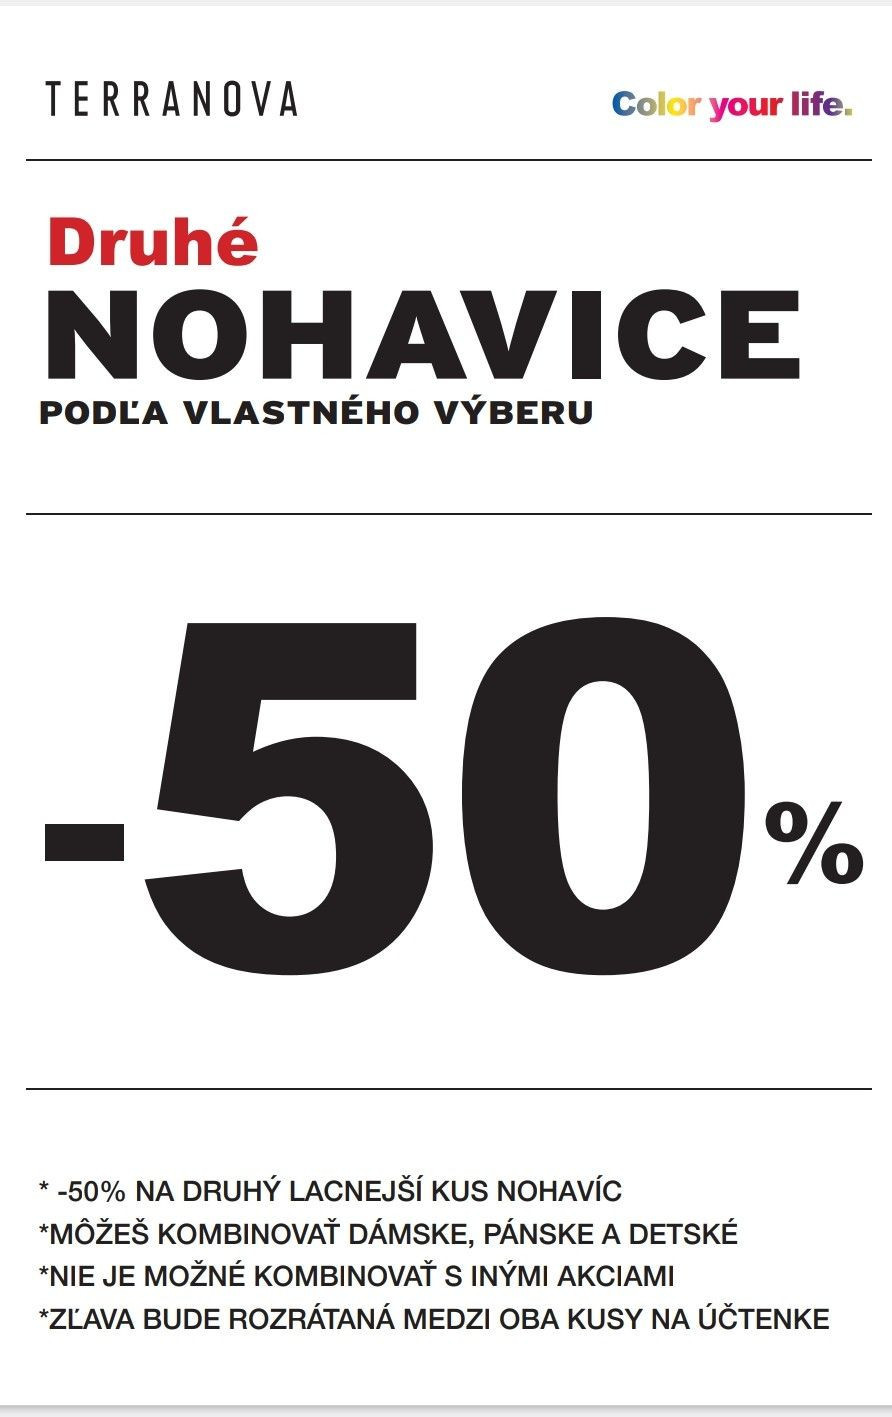 -50% DRUHÝ KUS NOHAVÍC